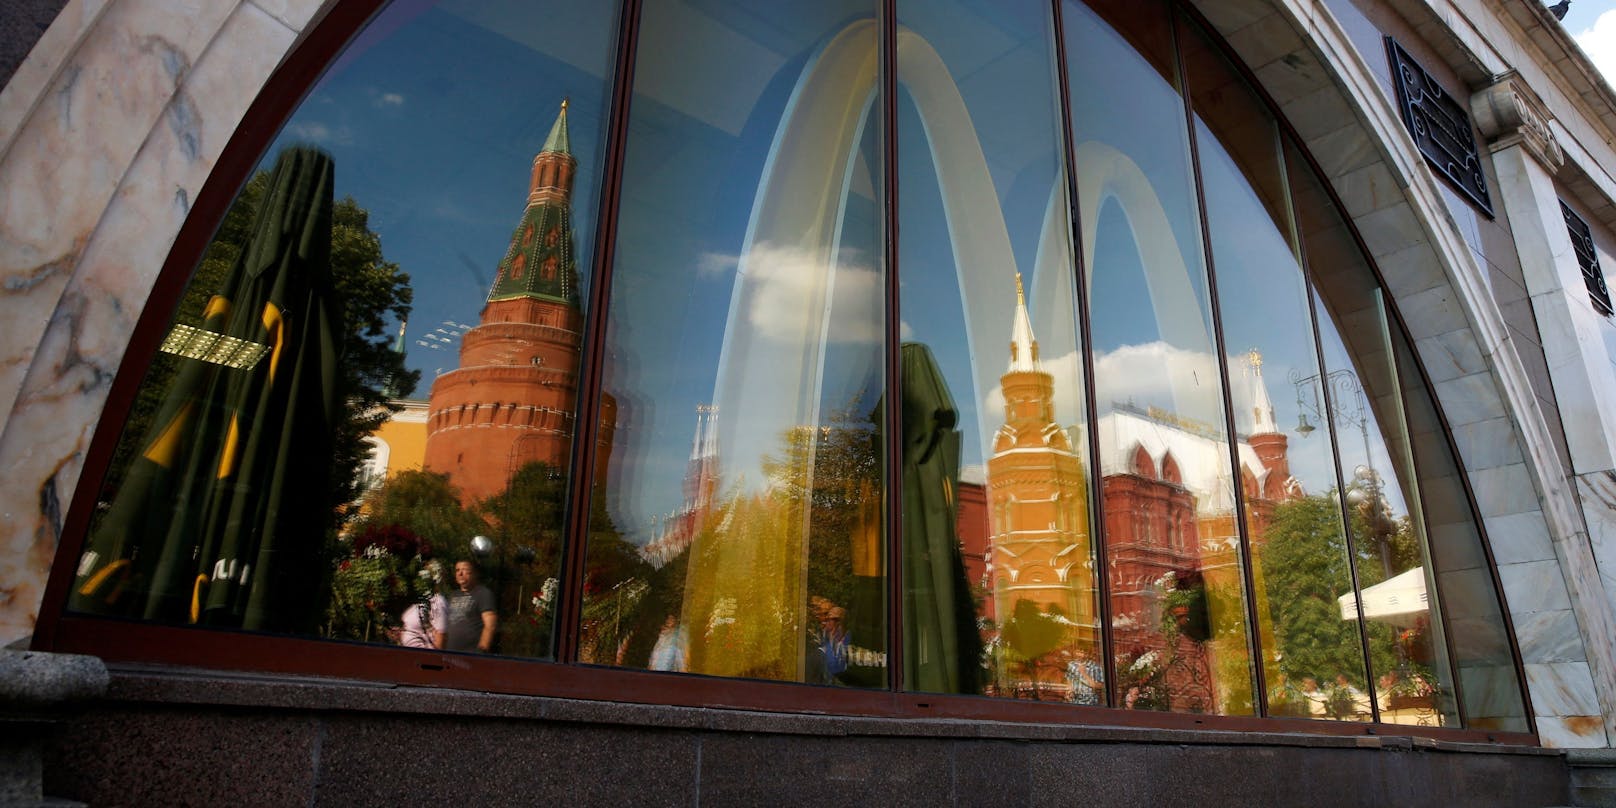 Die Türme des Kremls spiegeln sich in den Fensterscheiben einer McDonald's-Filiale nahe des Roten Platzes in Moskau. Nach scharfer Kritik kündigte der Fastfood-Konzern am Dienstag an, alle Filialen zu schließen.